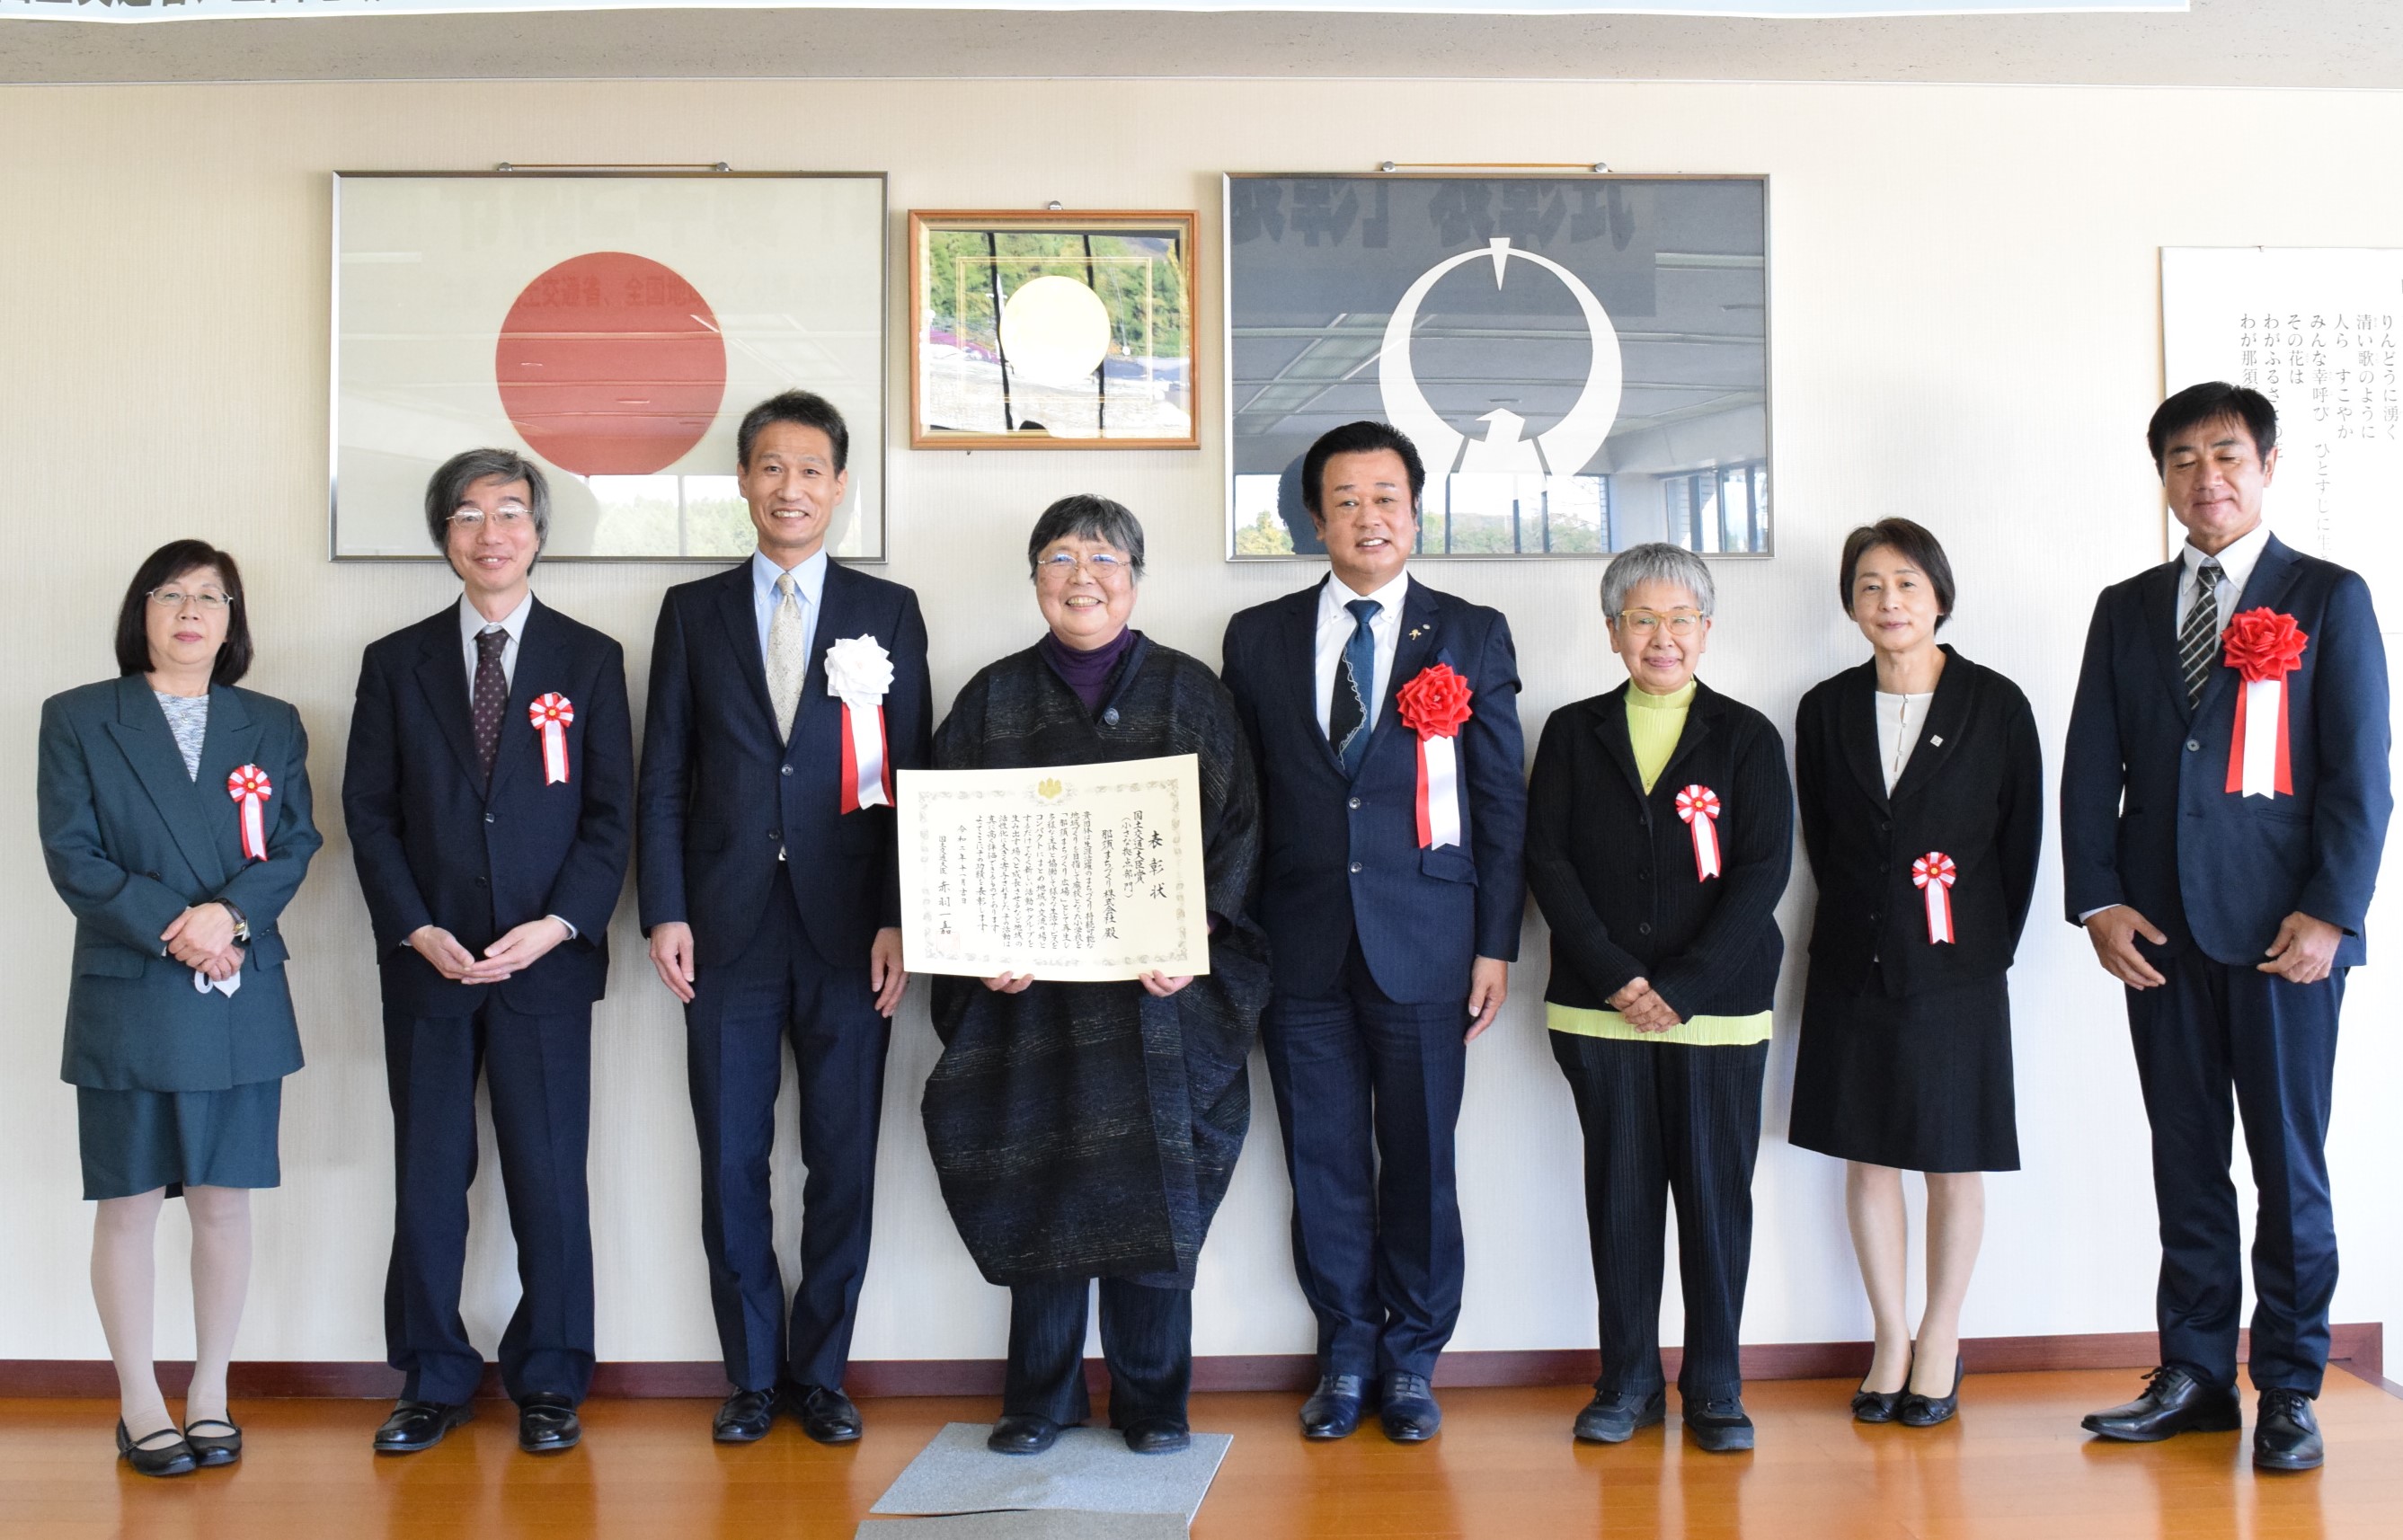 2020년 일본 국토교통성 표창을 수상한 치카야마 씨와 친구들 (사진 제공: 나스 마을 만들기 광장)